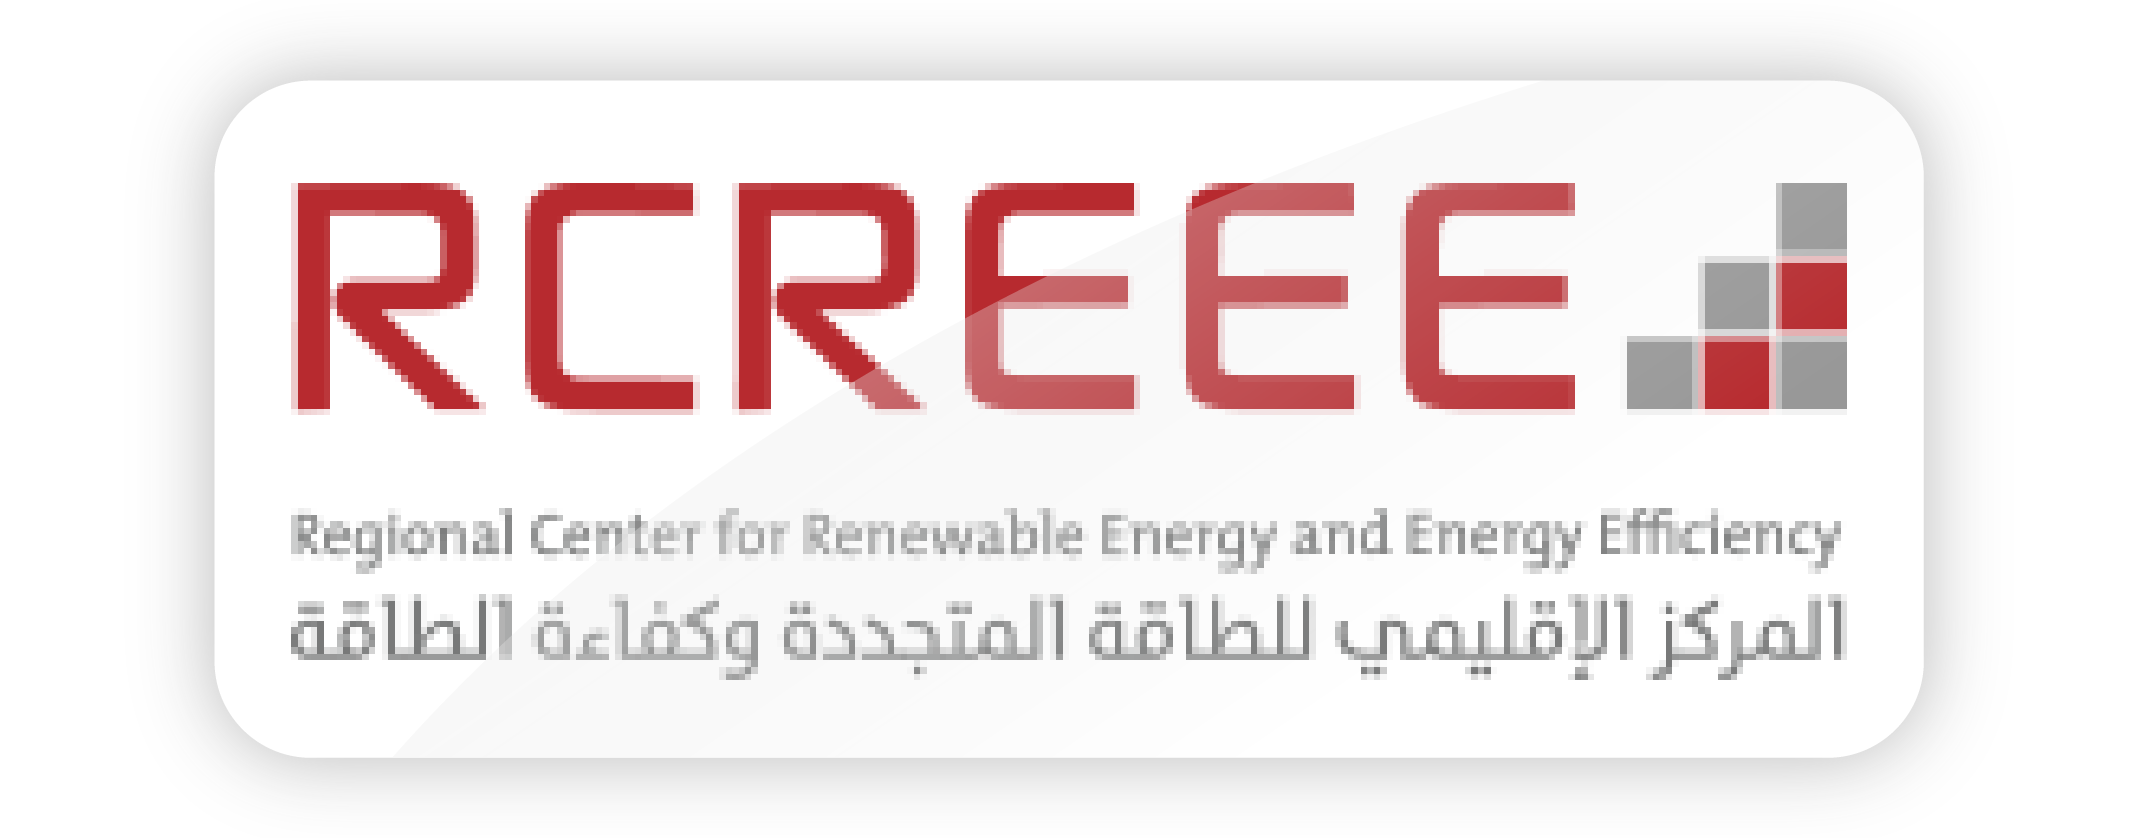 RCREEE logo